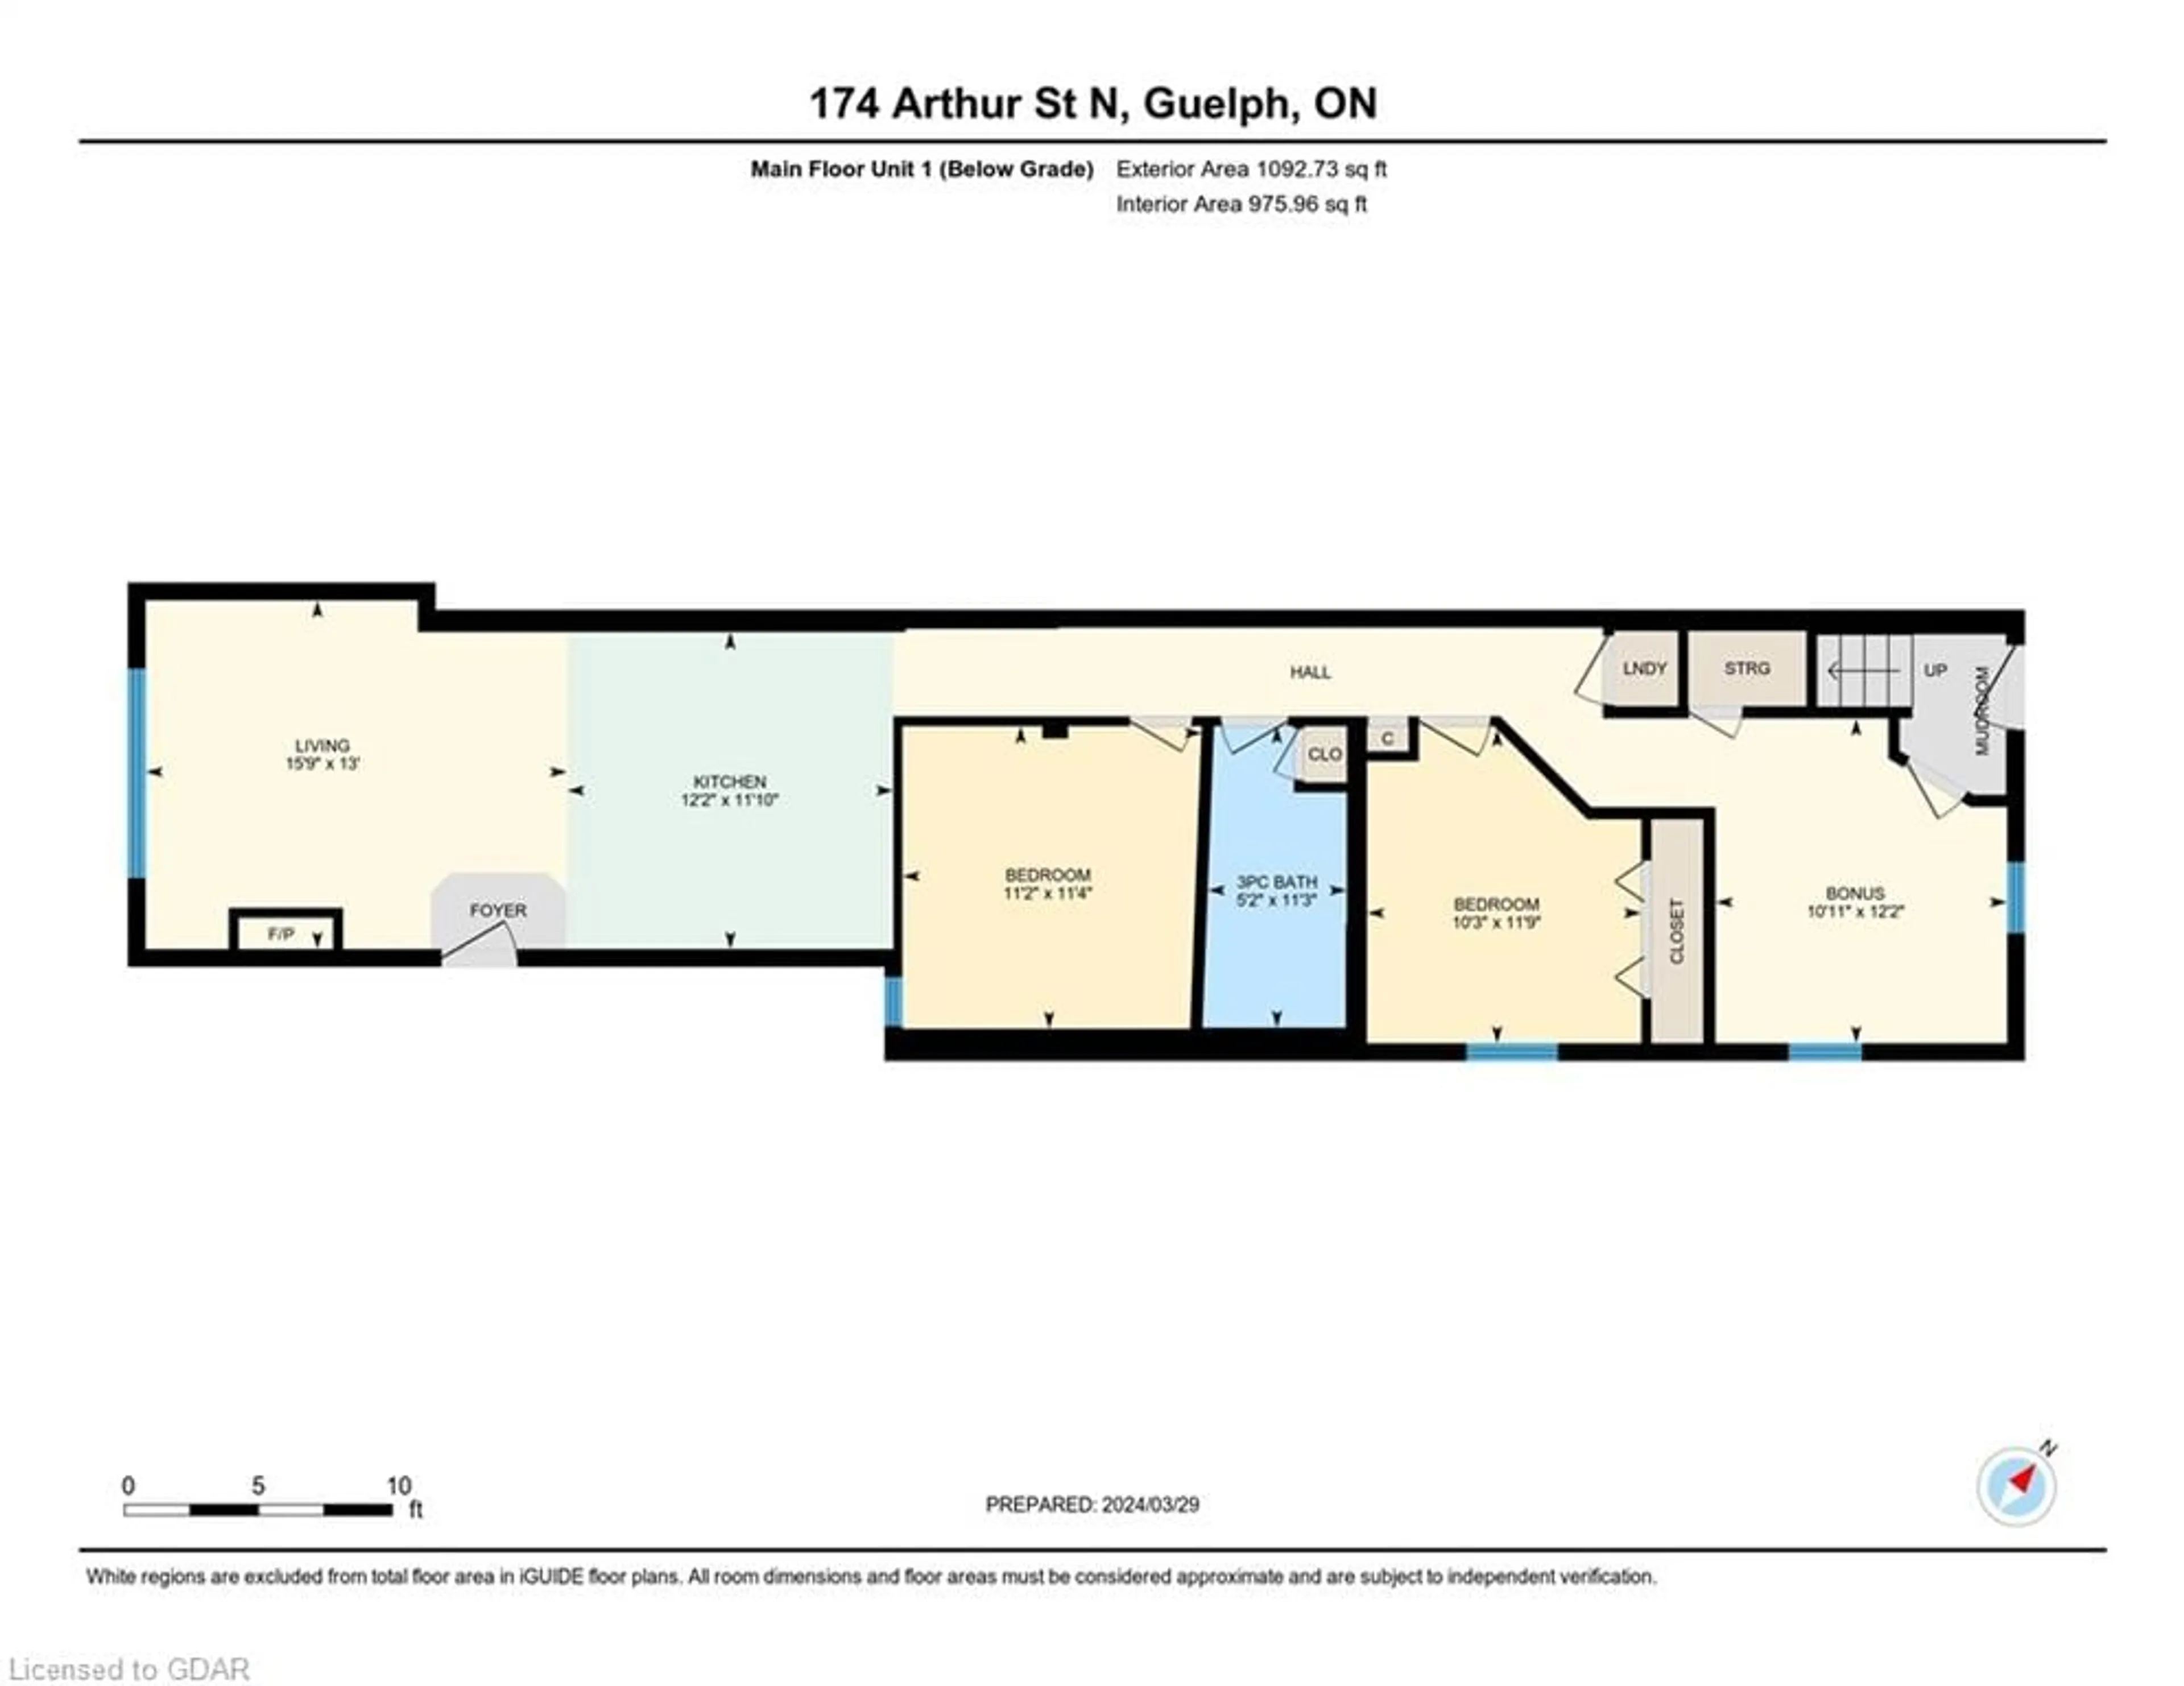 Floor plan for 174 Arthur St N, Guelph Ontario N1E 4V5